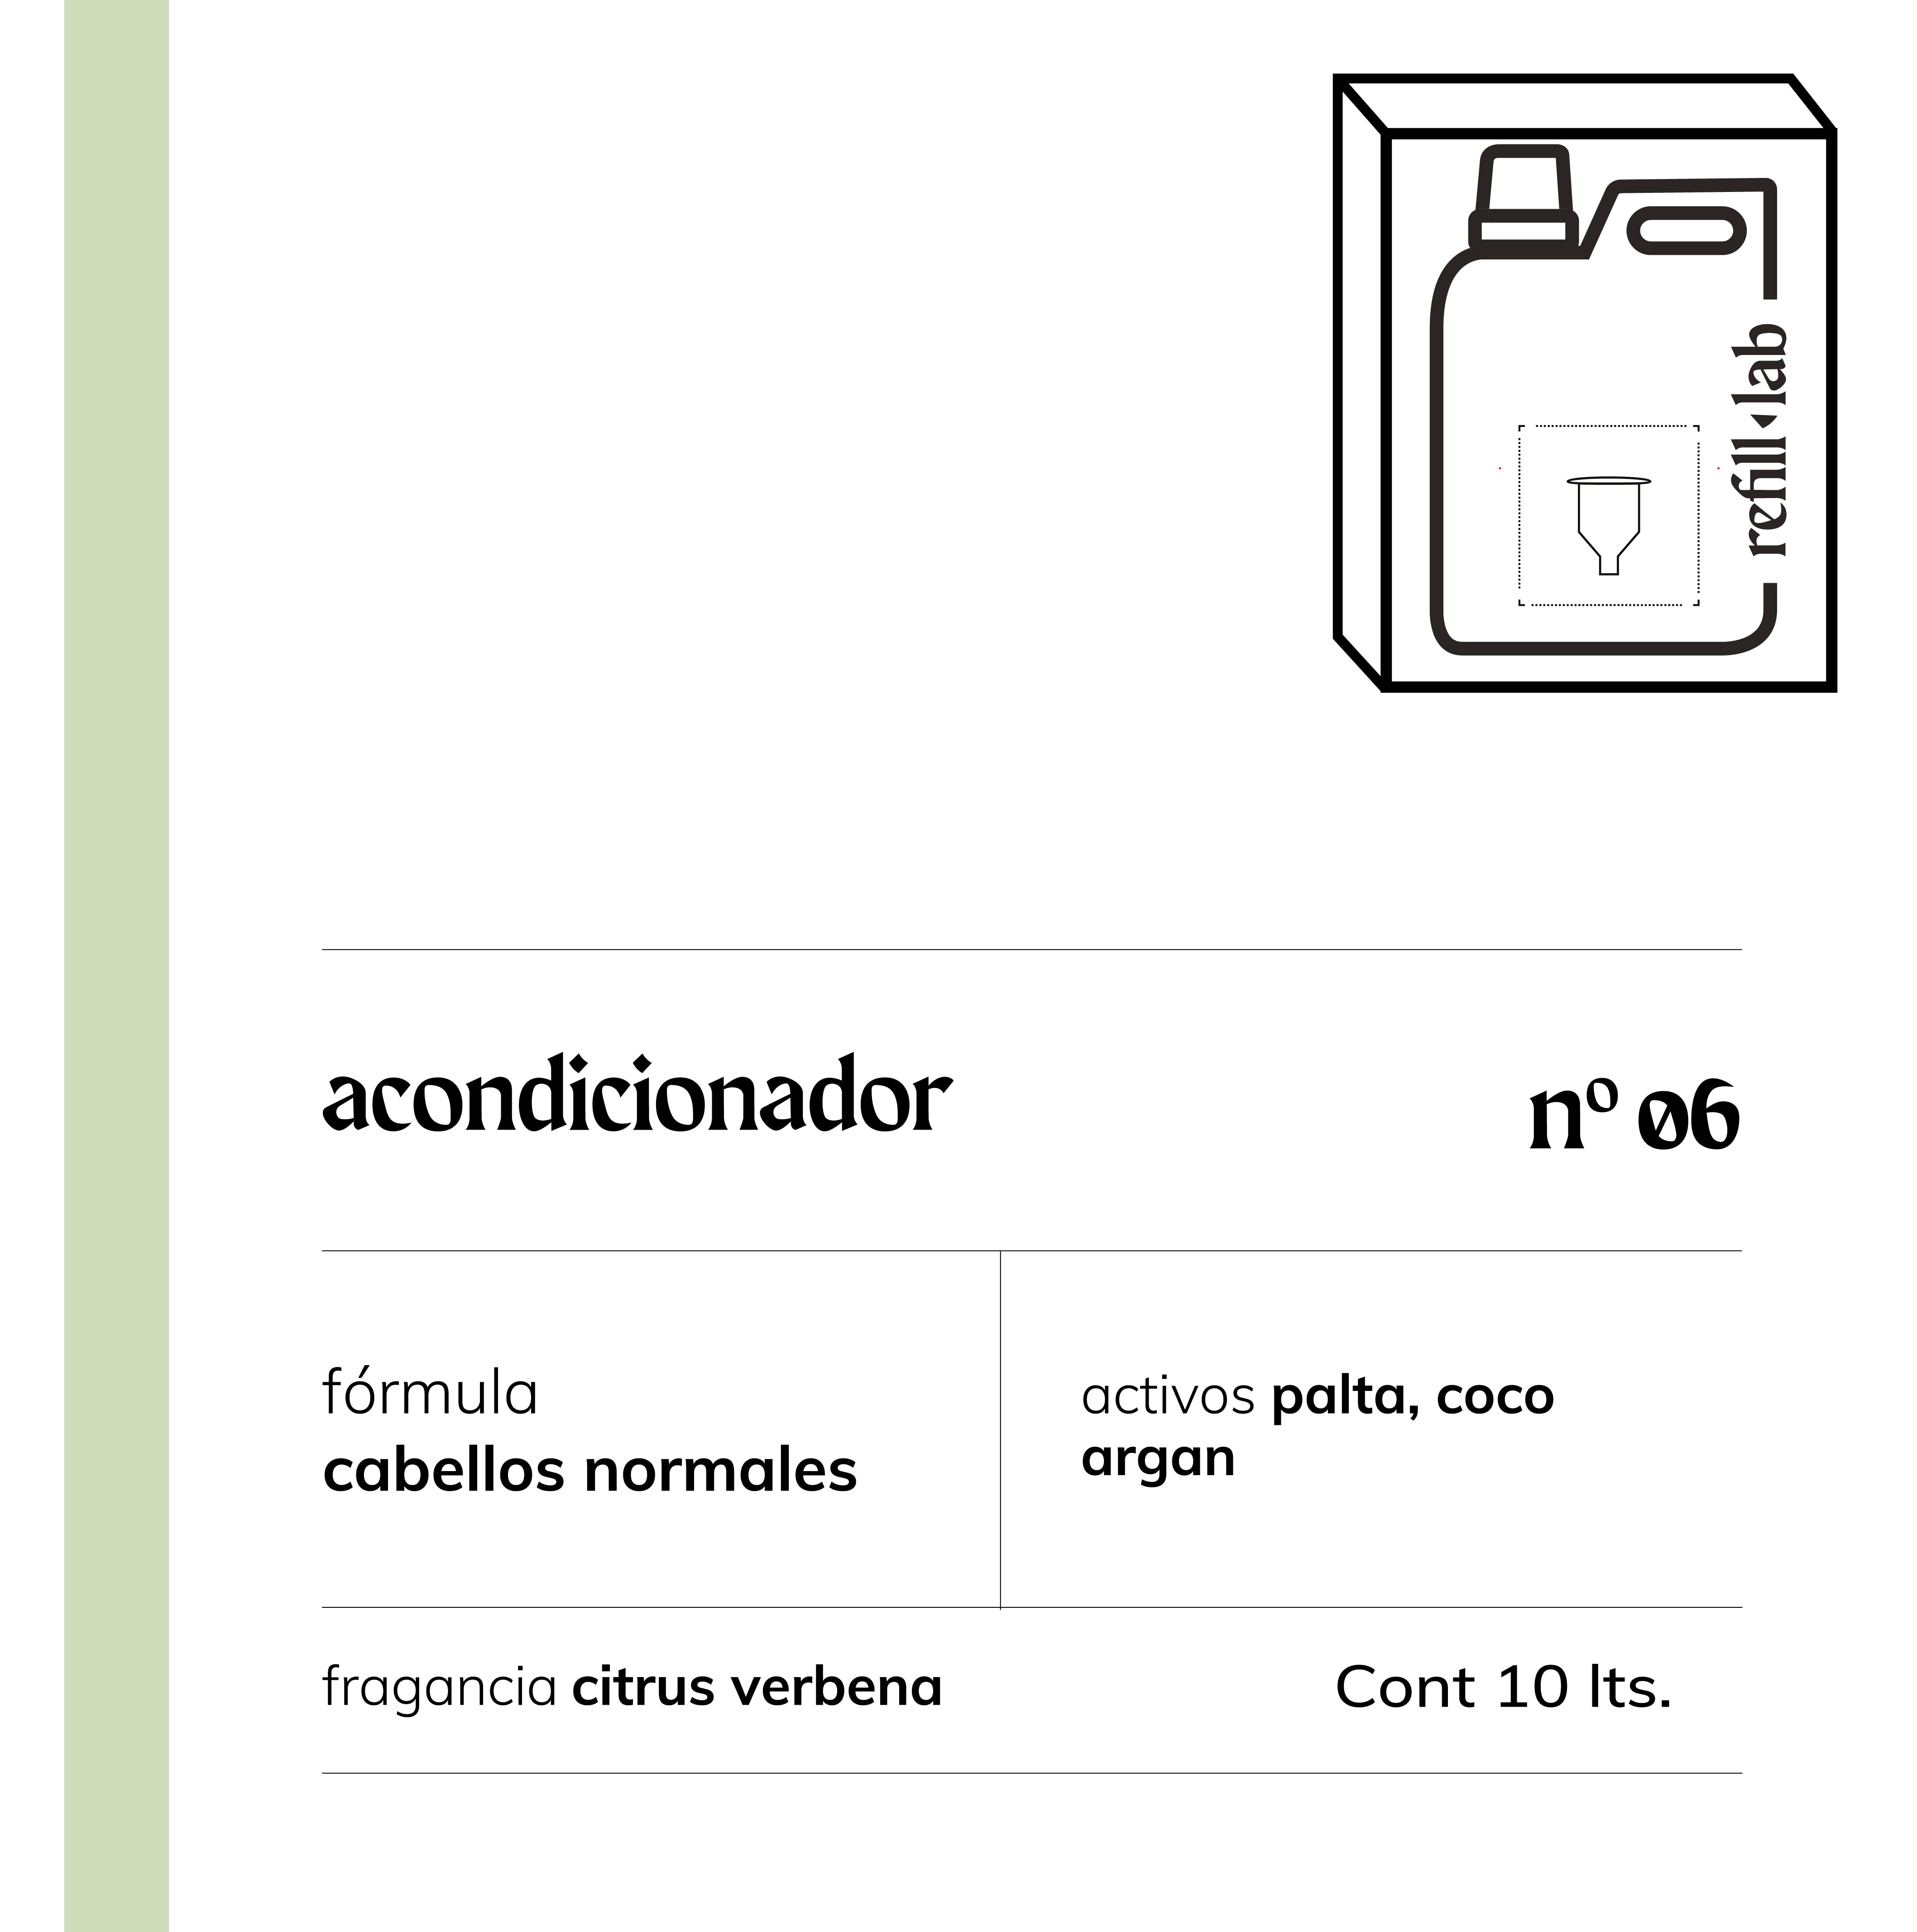 Acondicionador sin sulfatos - Cabellos Normales - Citrus Verbena - 10 lts.